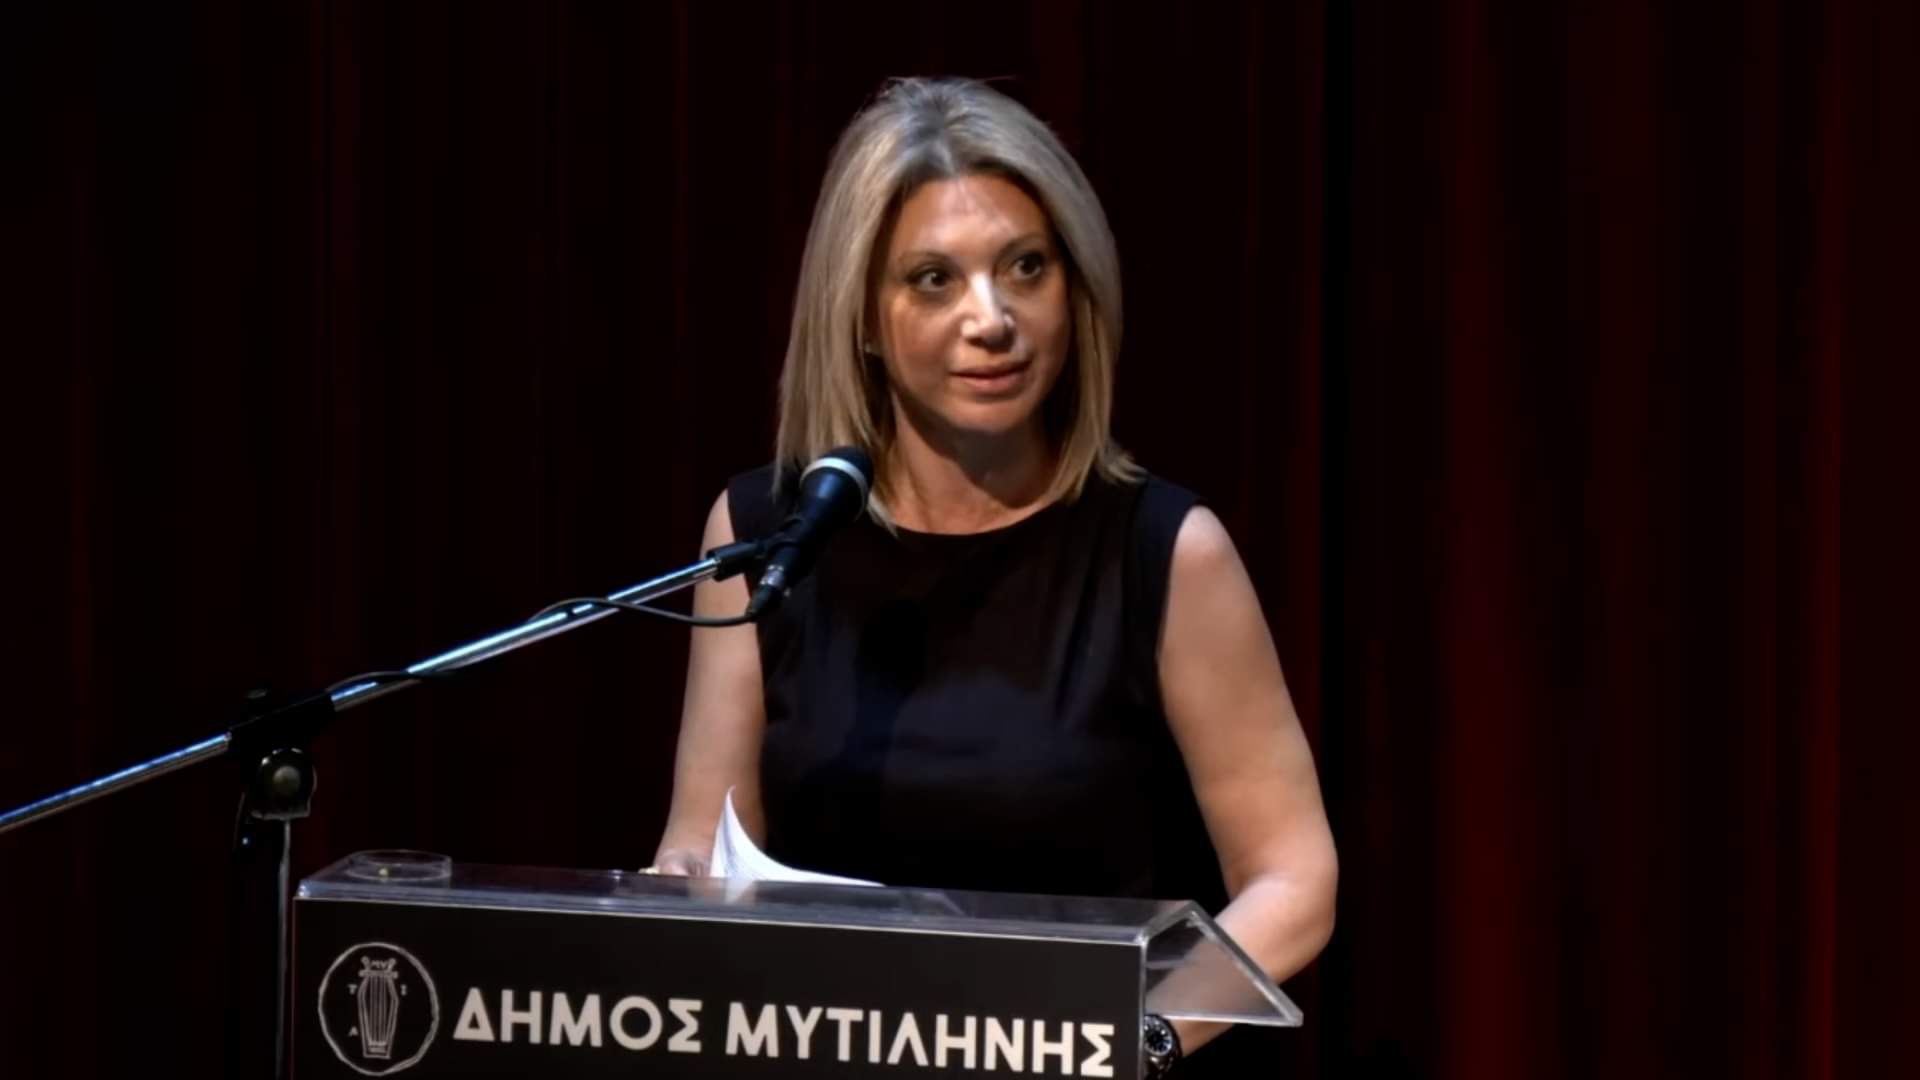 Κατάμεστο το Δημοτικό θέατρο Μυτιλήνης στην εκδήλωση του Συλλόγου θυμάτων των Τεμπών